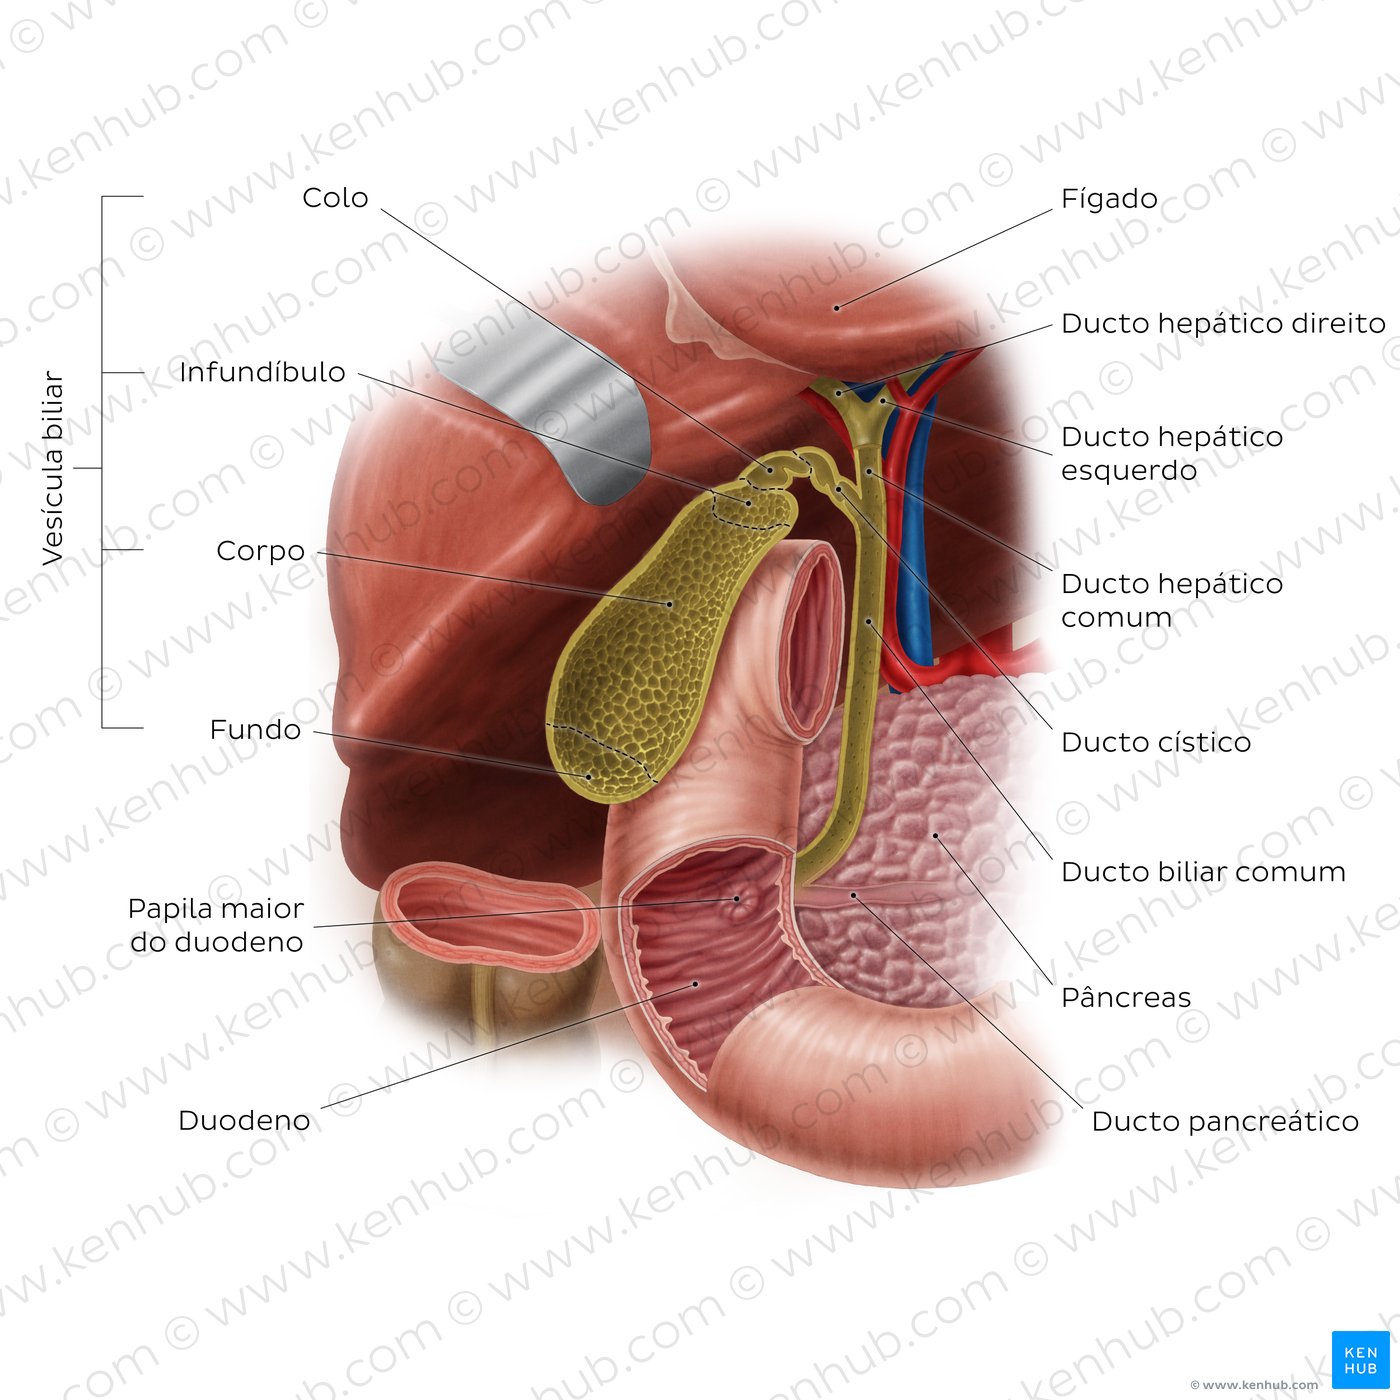 Anatomia do sistema biliar e localização da vesícula biliar - vista anterior